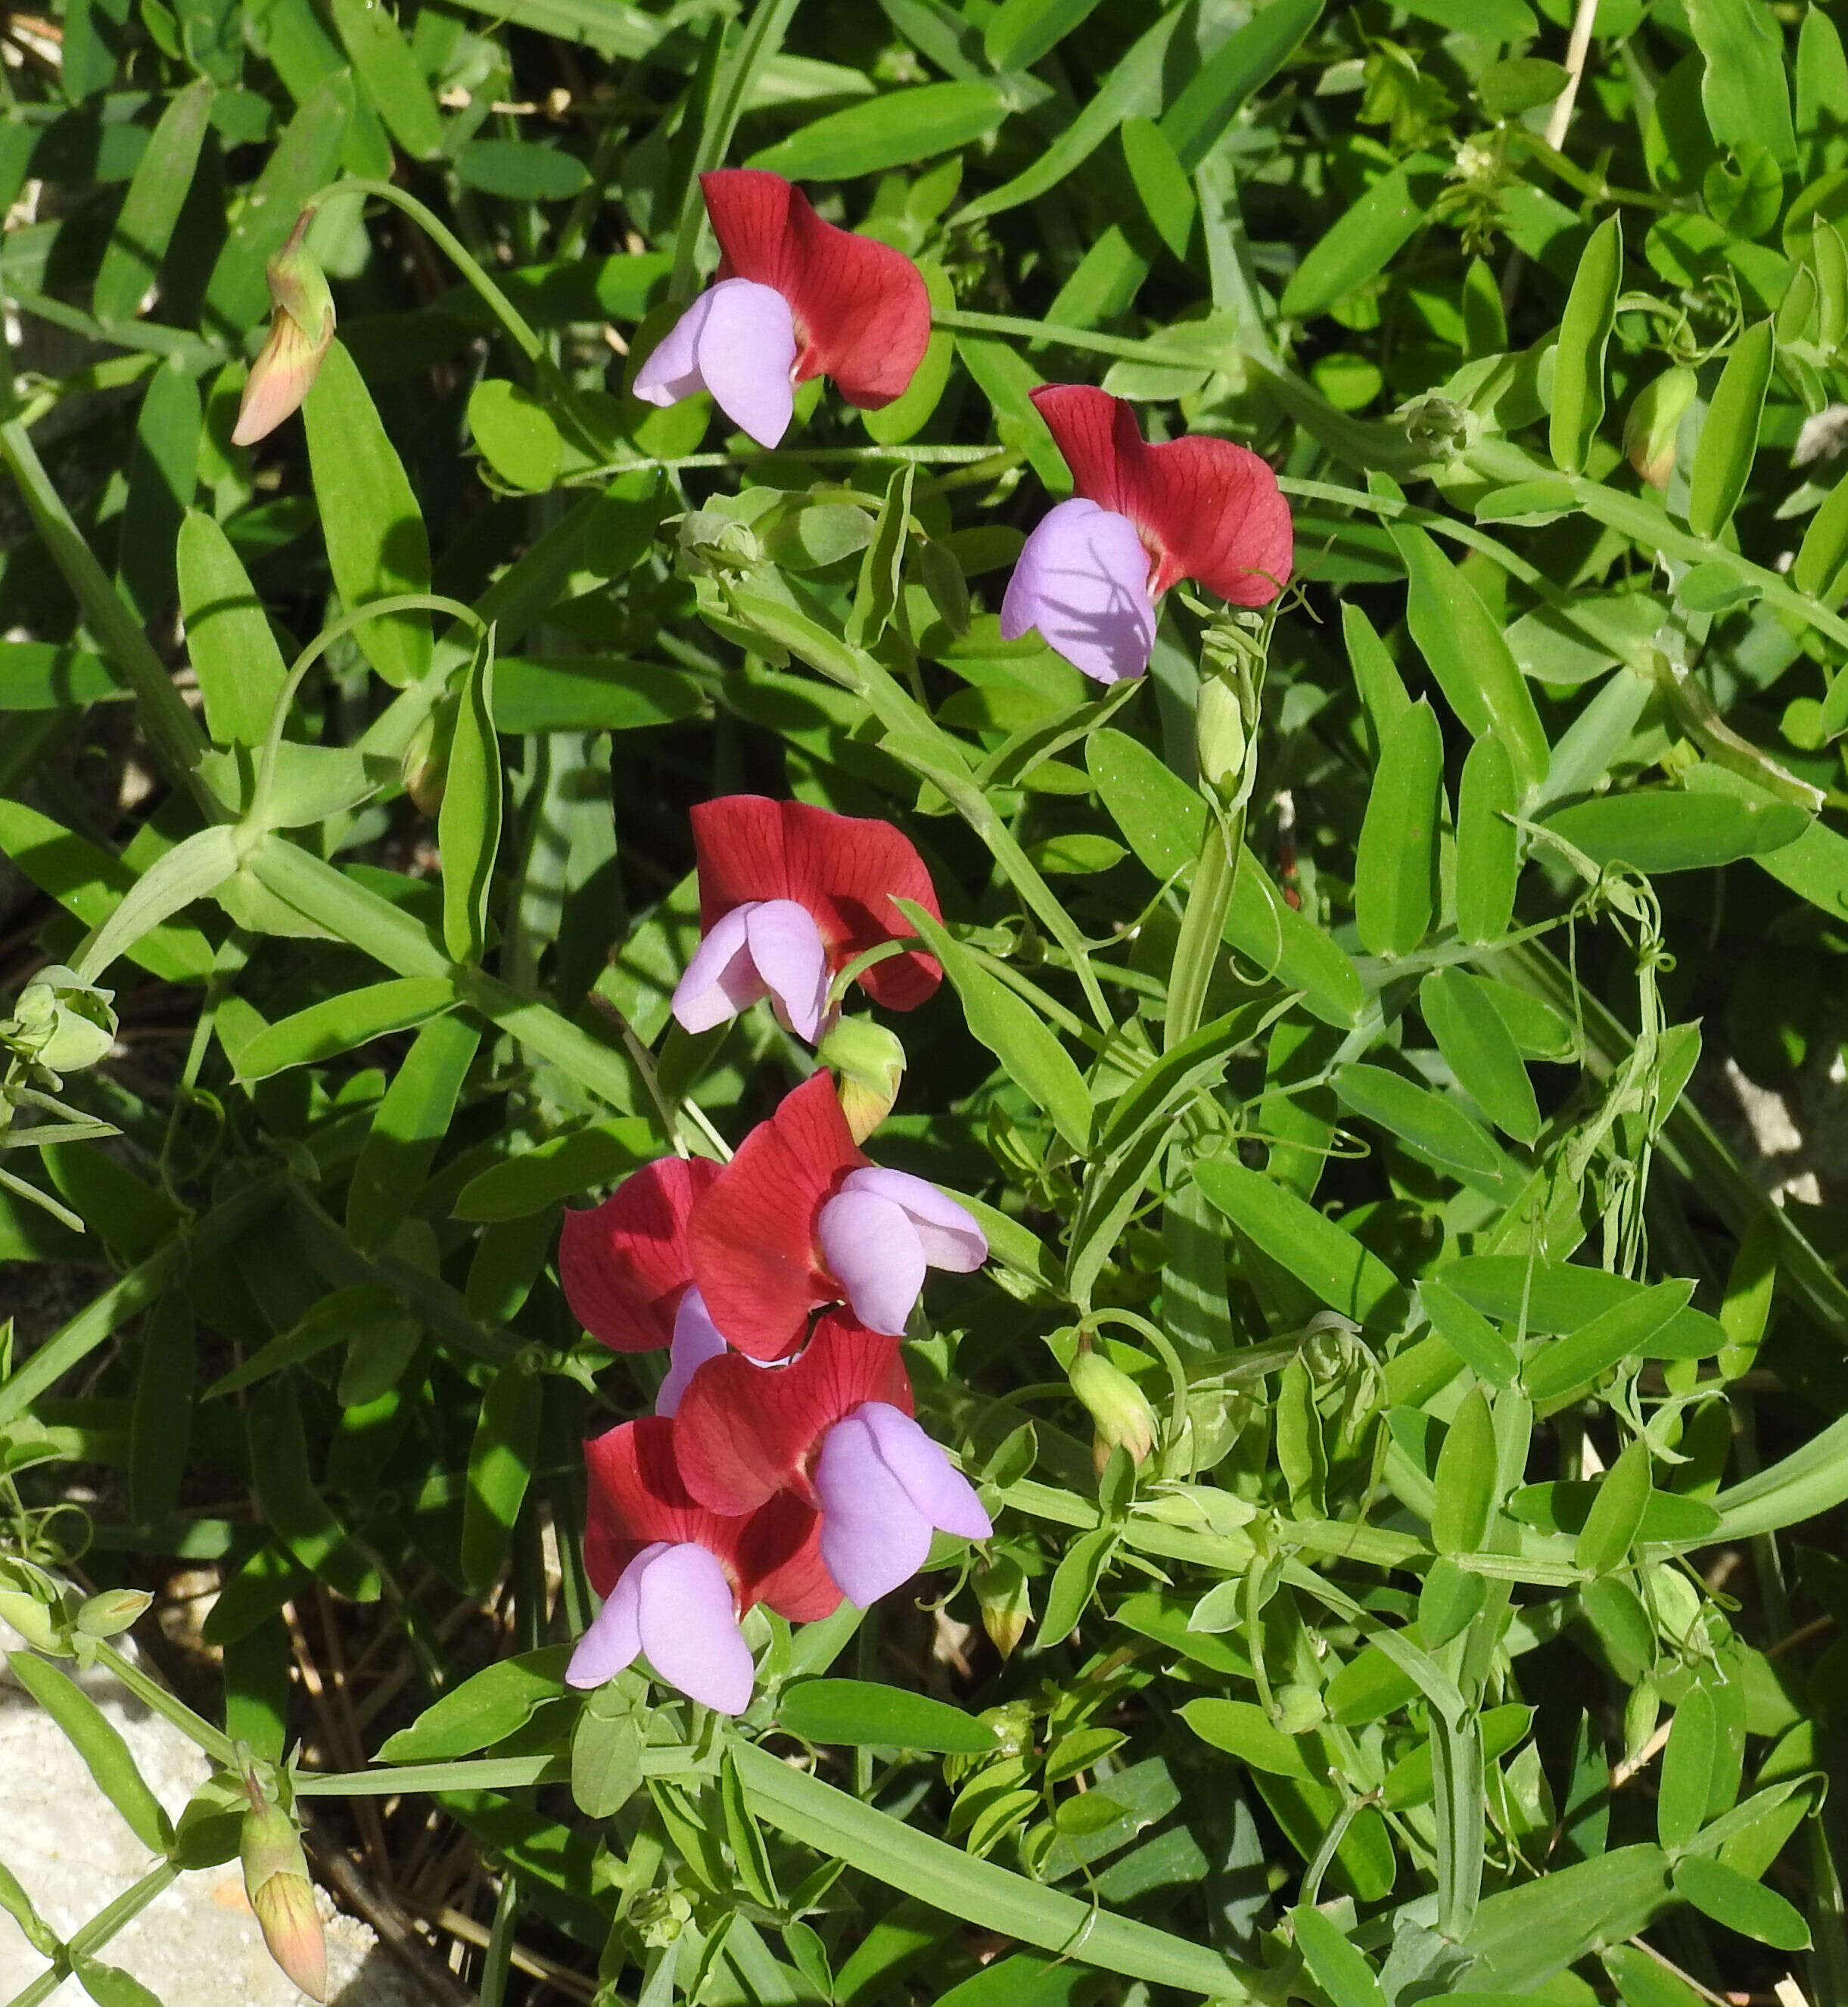 Image of cicercha purpurina